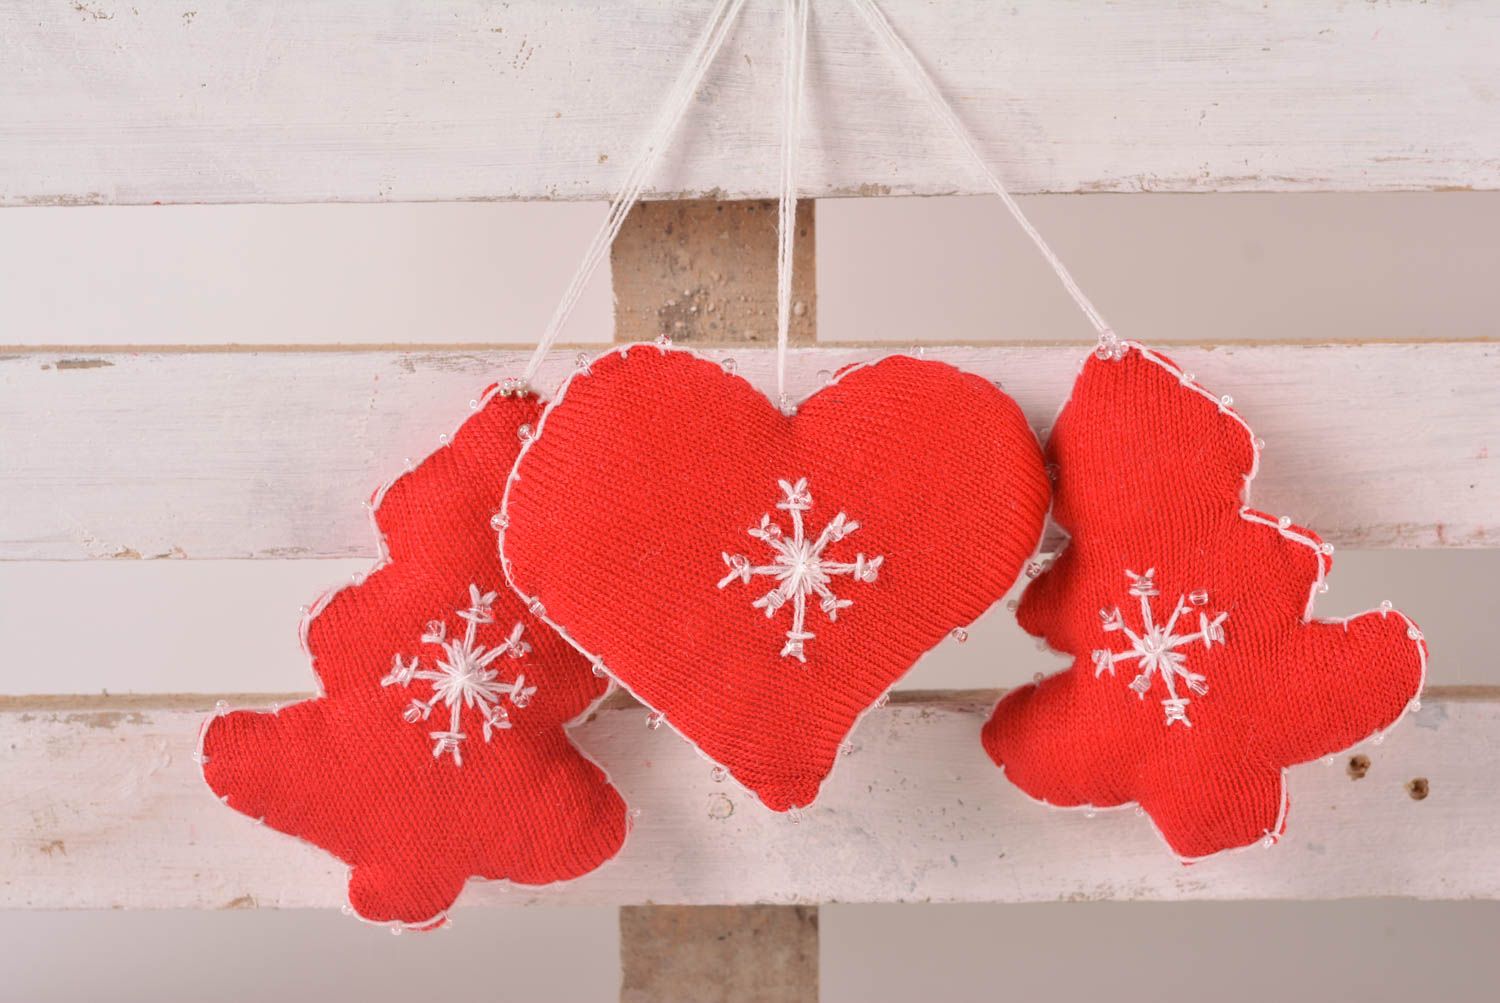 Décorations pour sapin de Noël faites main 2 sapins et coeur rouges Déco Noël photo 1